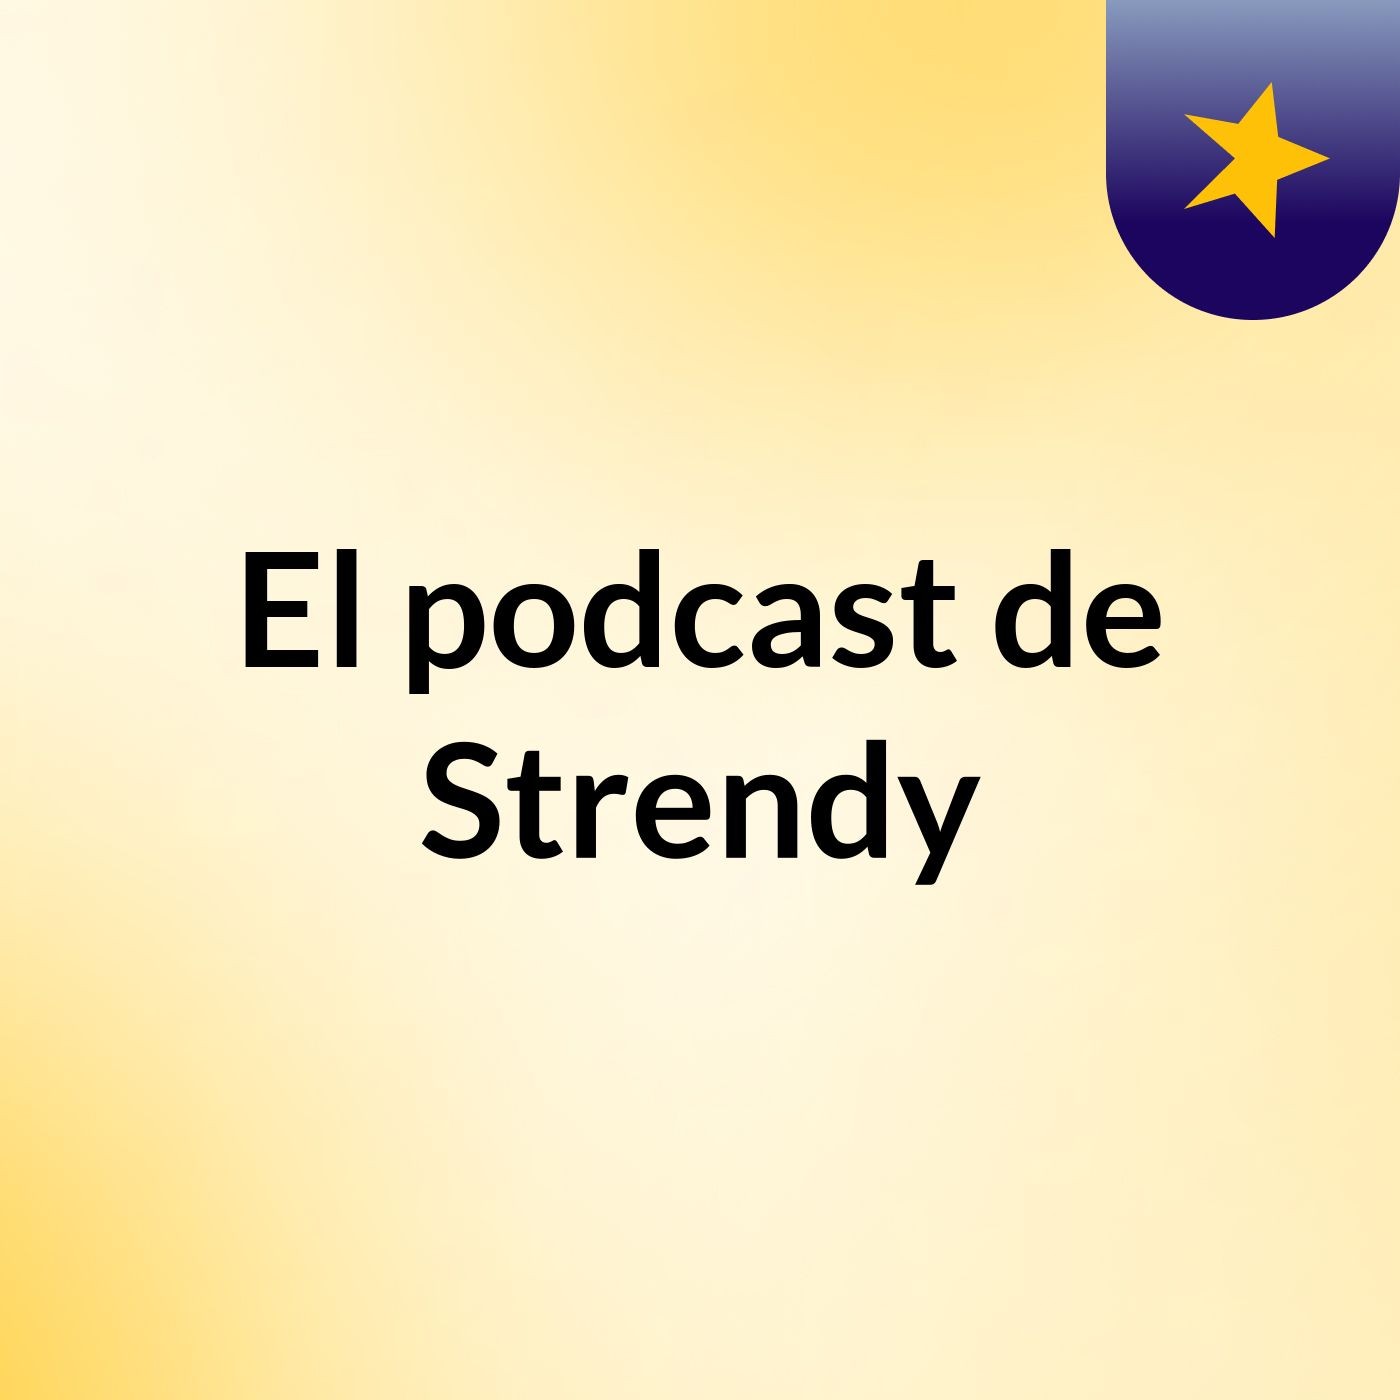 El podcast de Strendy